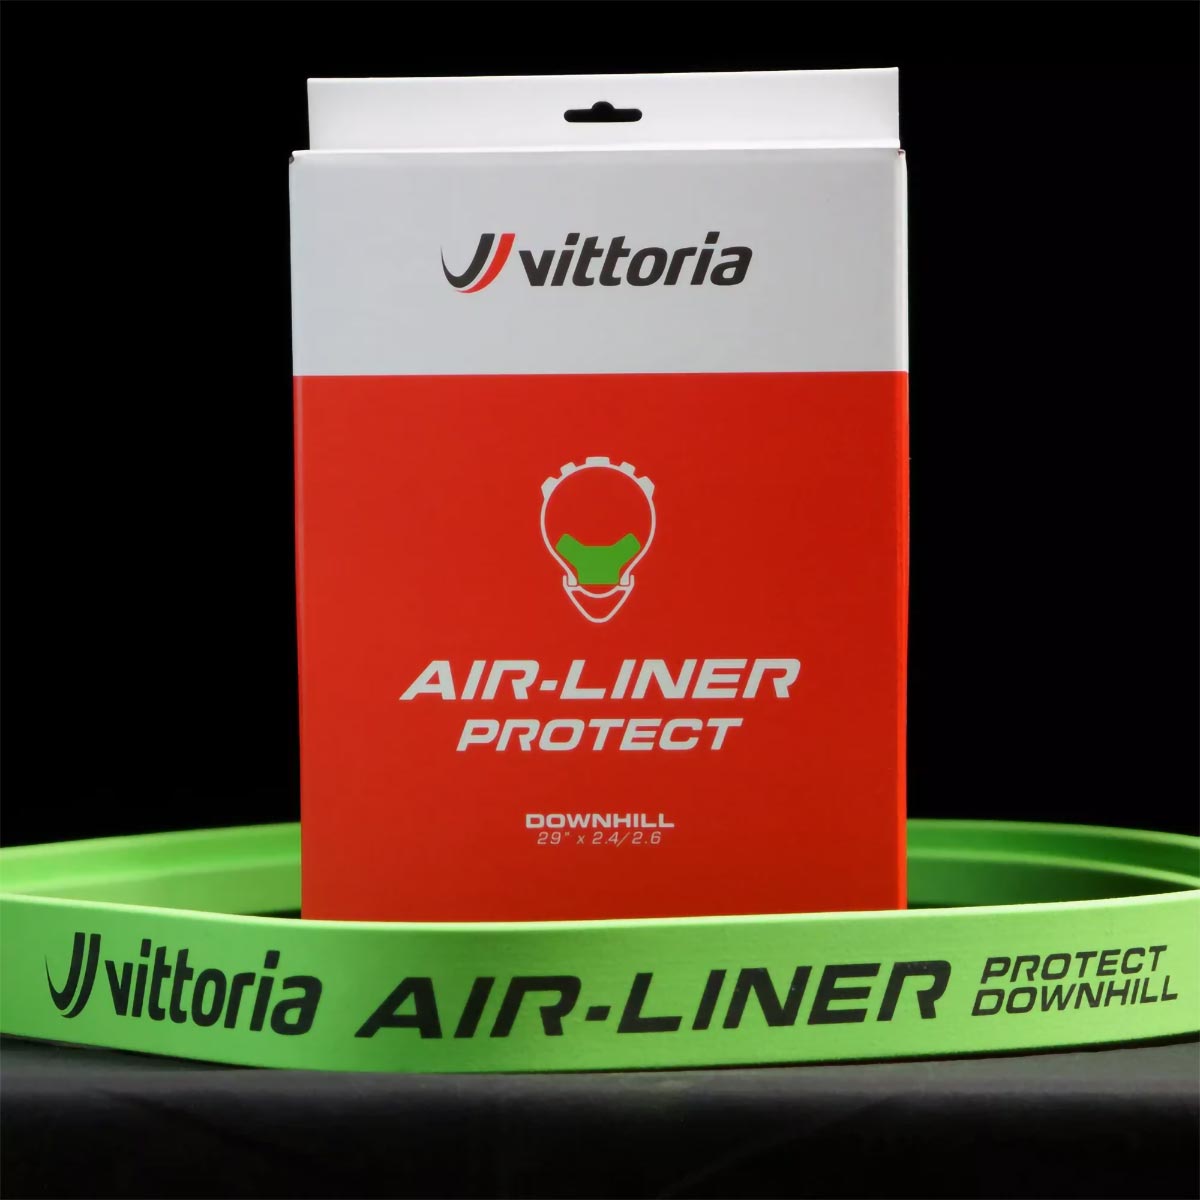 Vittoria Air-Liner Protect, una nueva gama de insertos optimizados para las modalidades más extremas del Mountain Bike